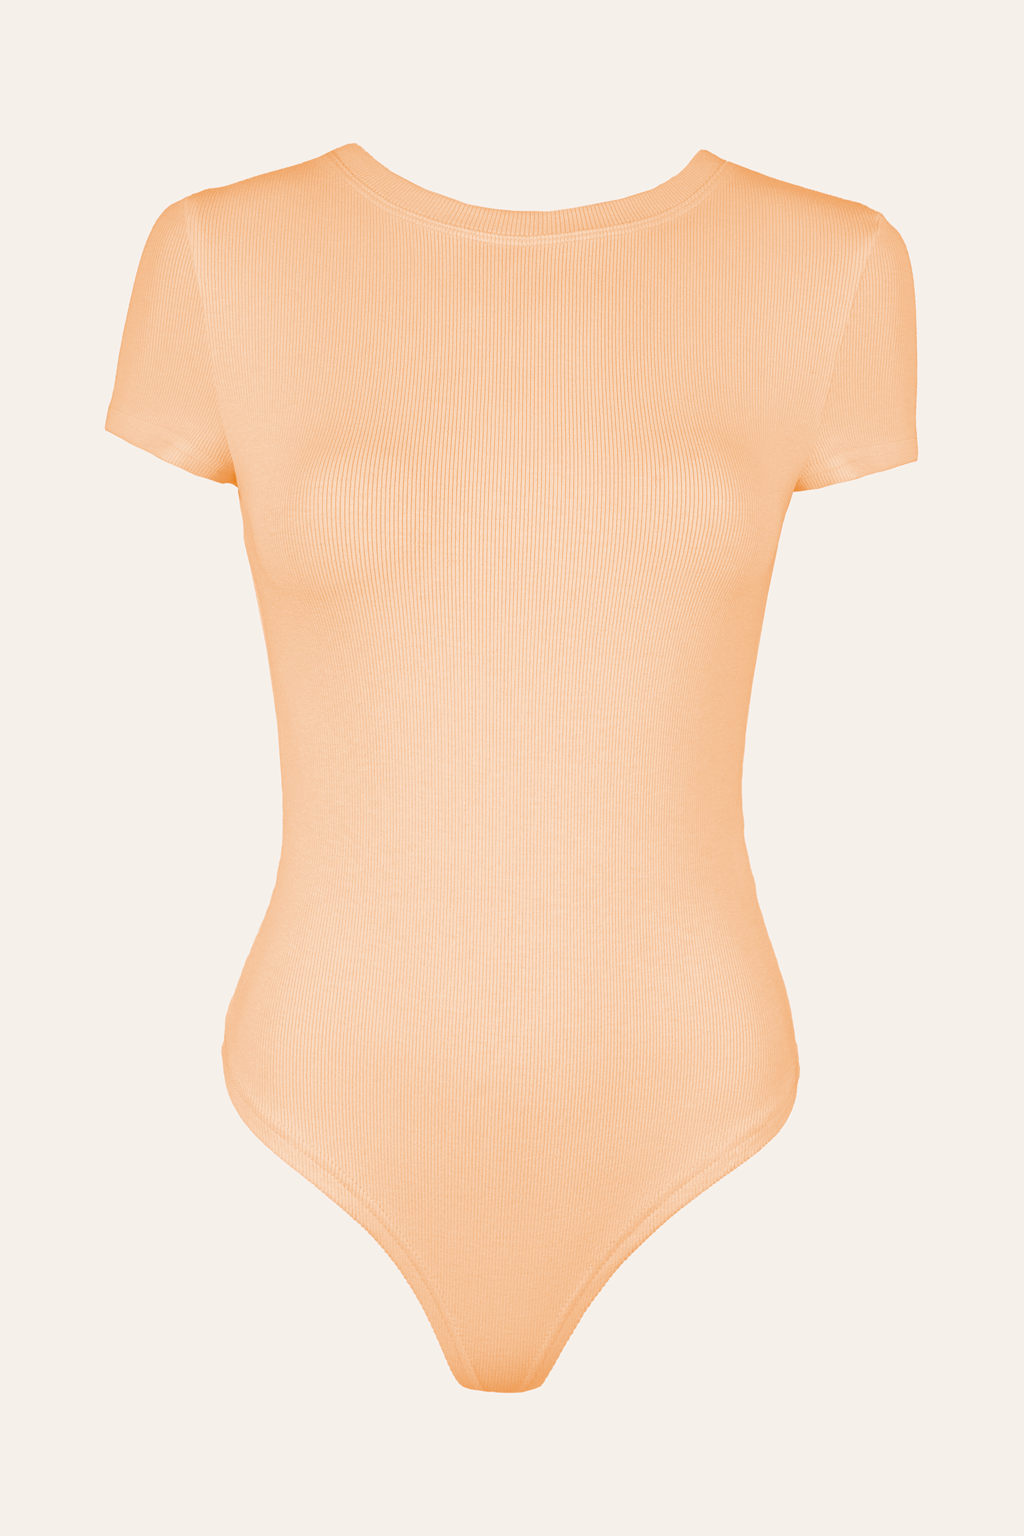 T-Shirt Body (Peach)